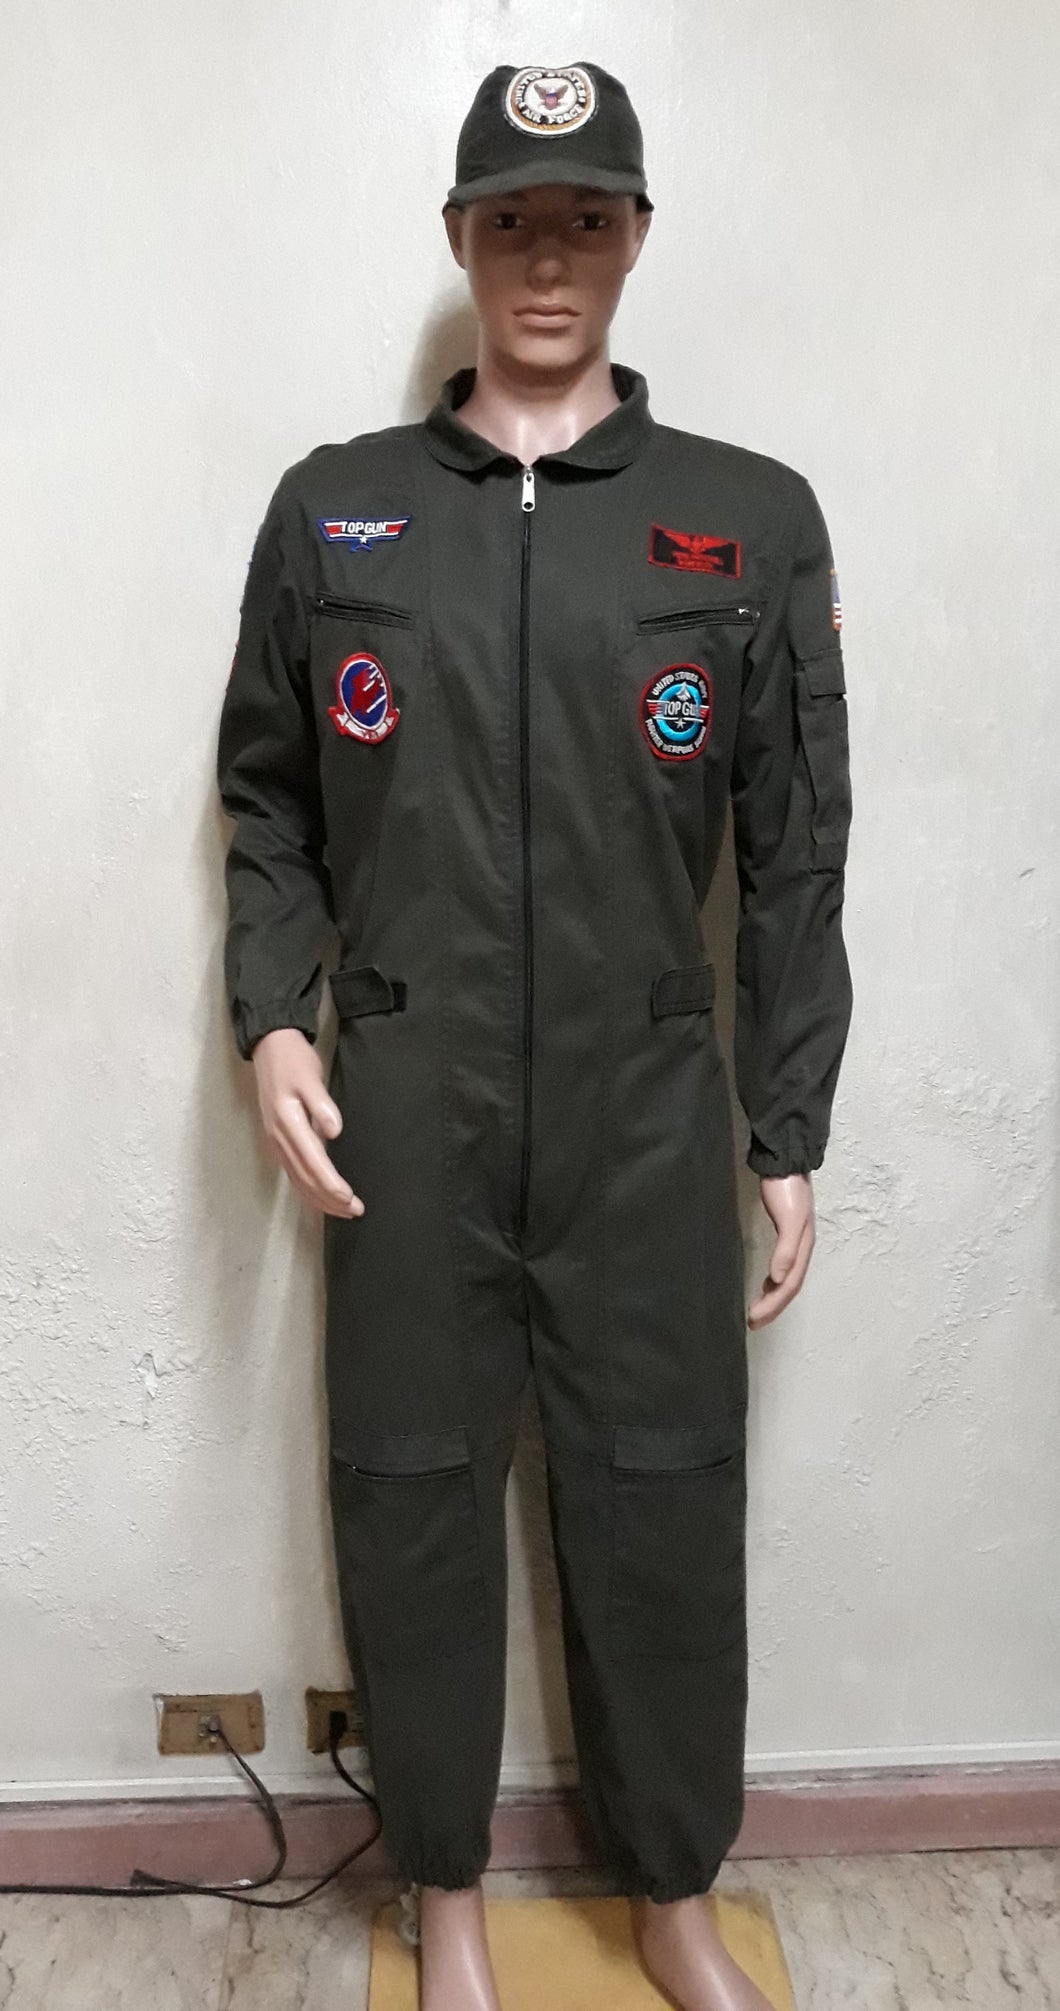 Top Gun Air Force Pilot Costume